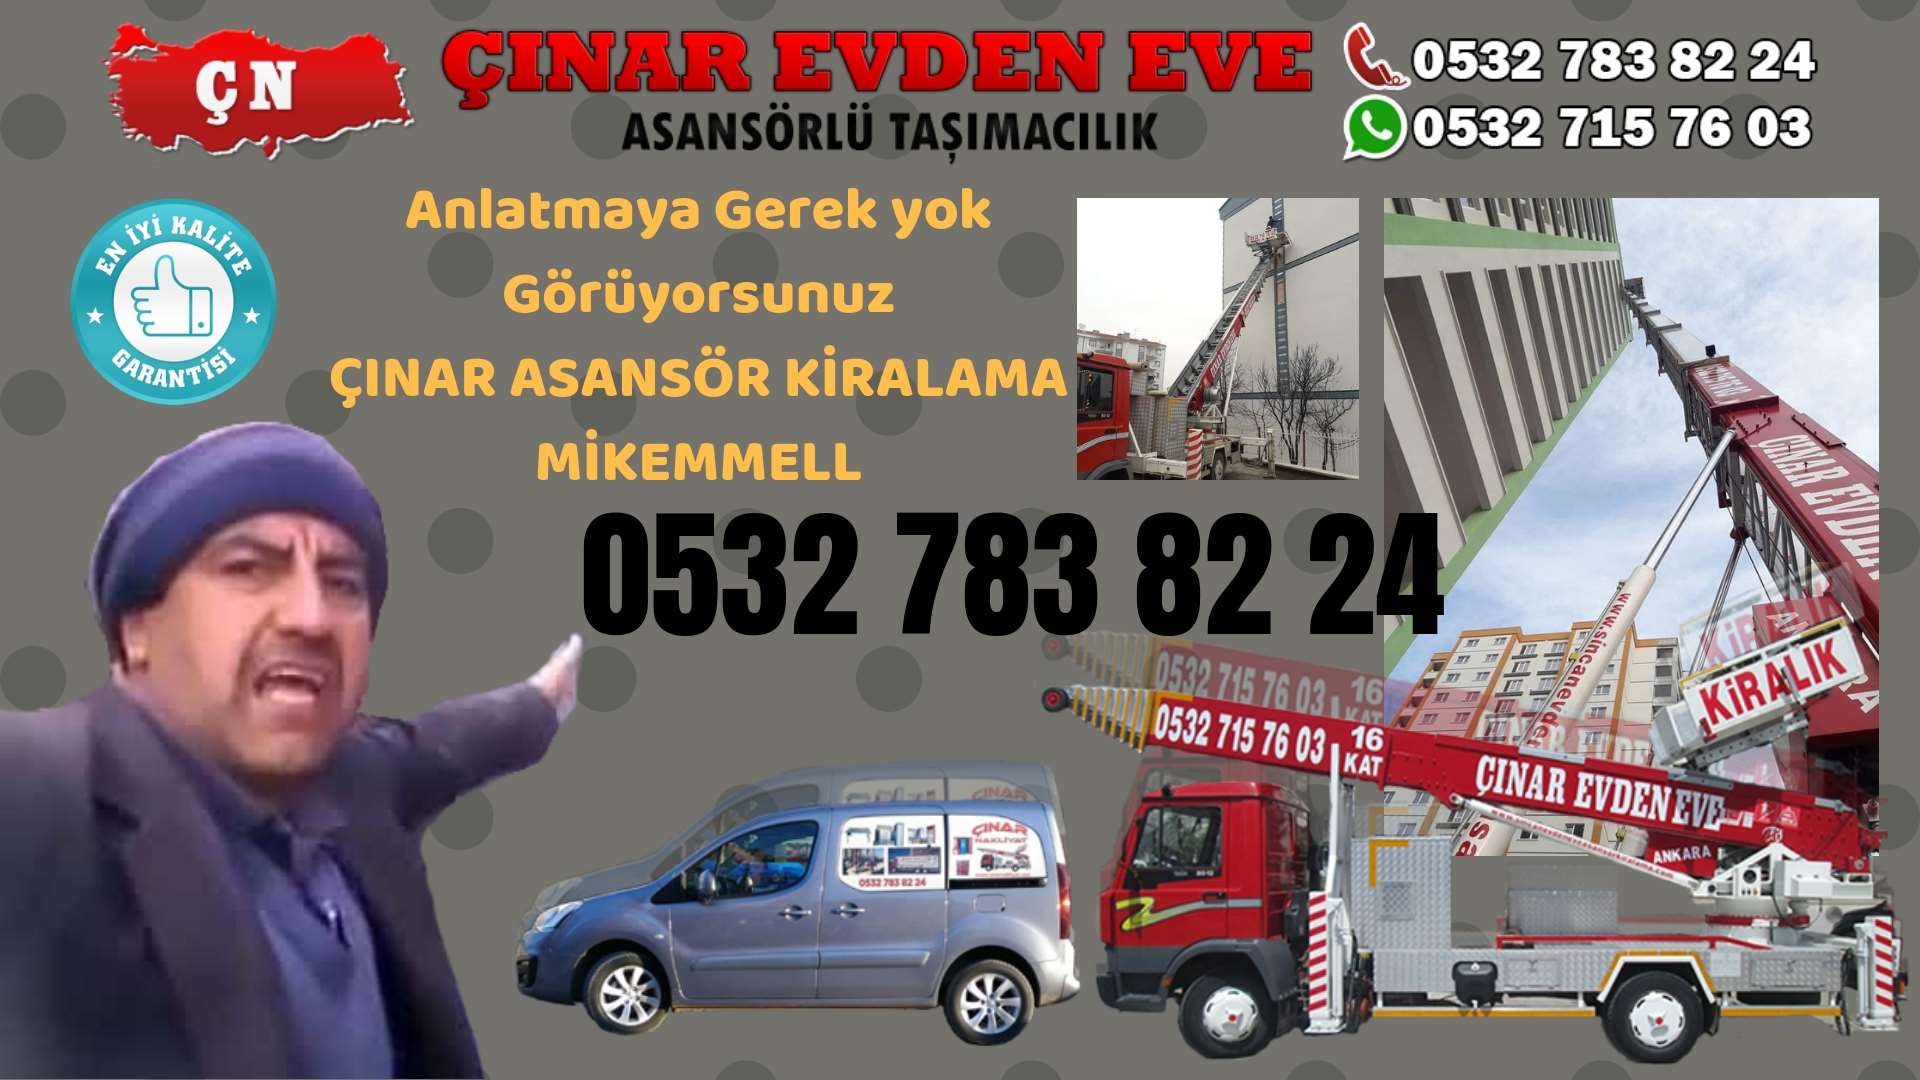 Ankara Güdül Ankara asansör kiralama hizmeti sizlere başta kalite ve maddi acıdan tasarruf 0532 715 76 03